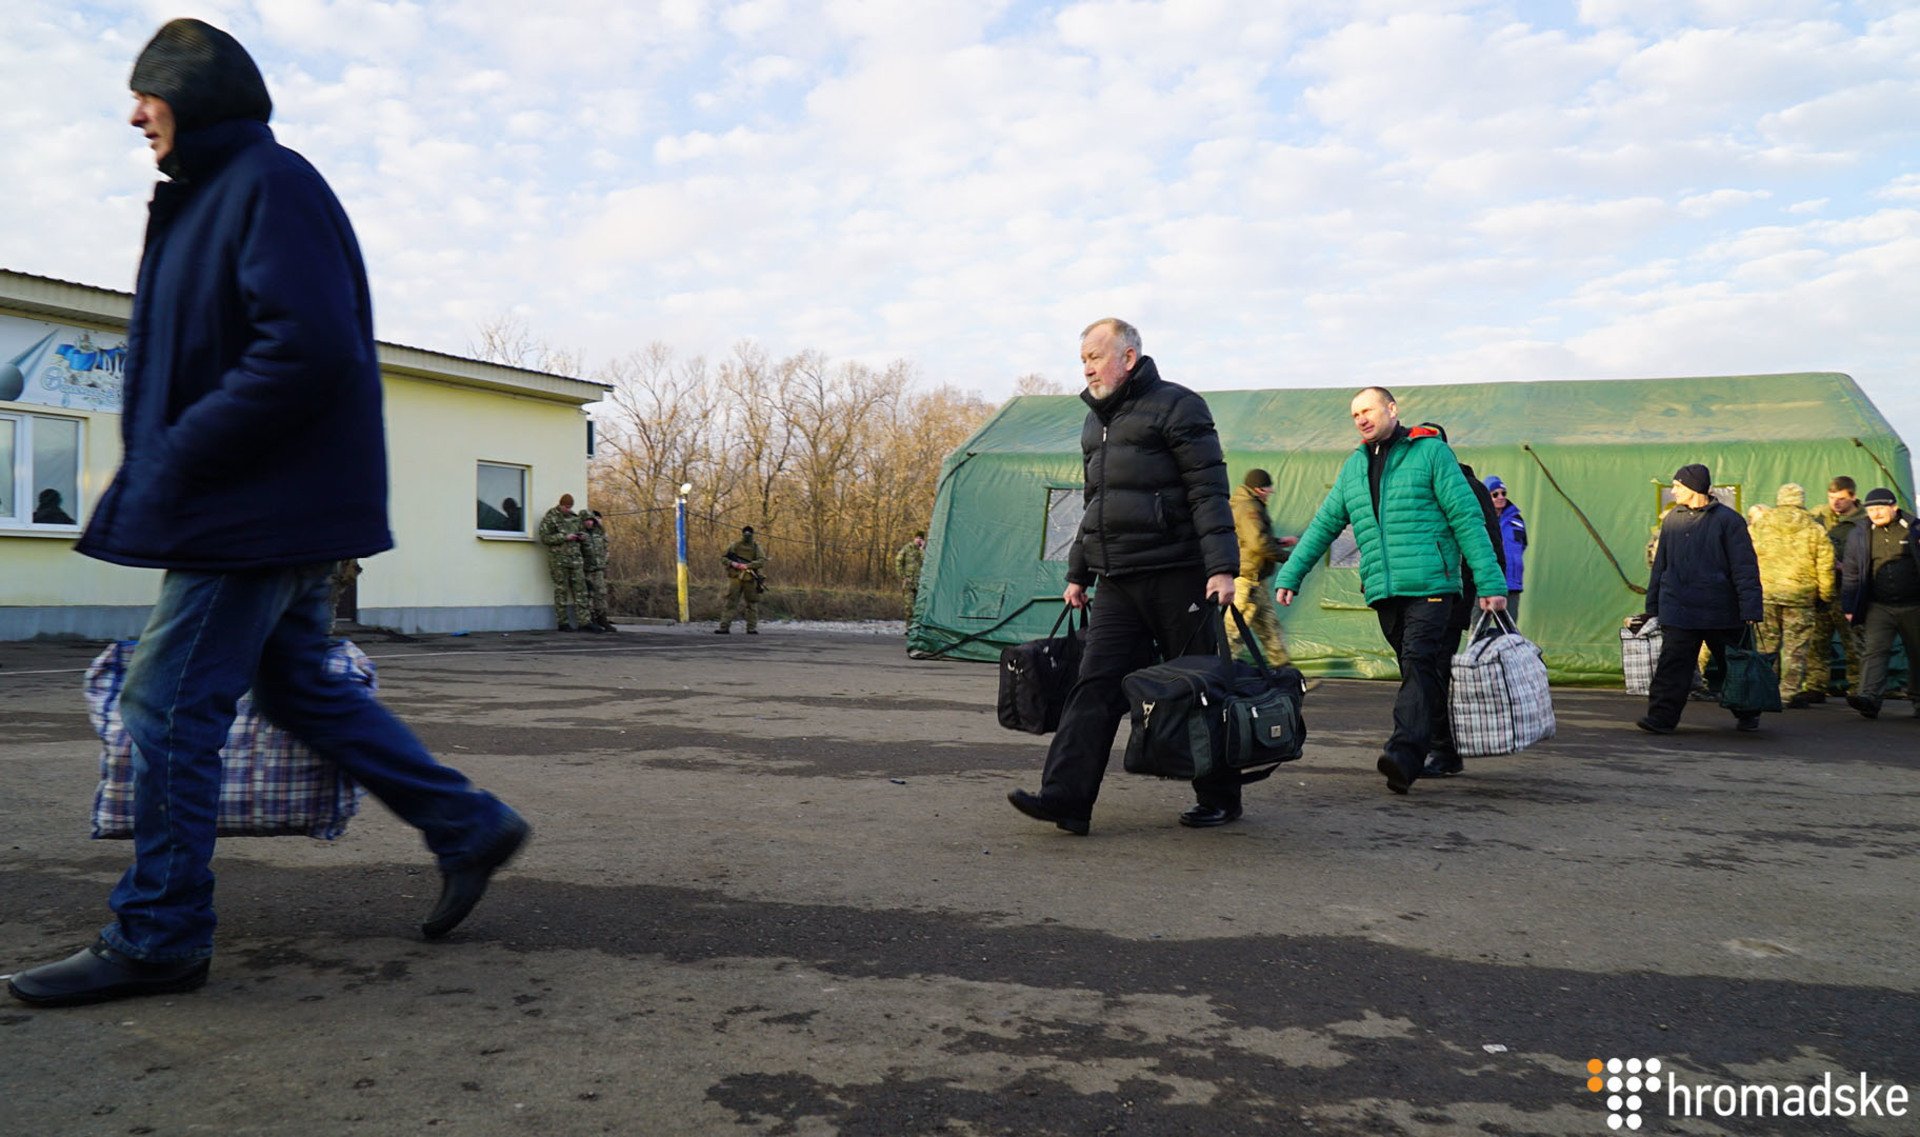 Звільнені з полону поспішають додому. Фото з сайту hromadske.ua